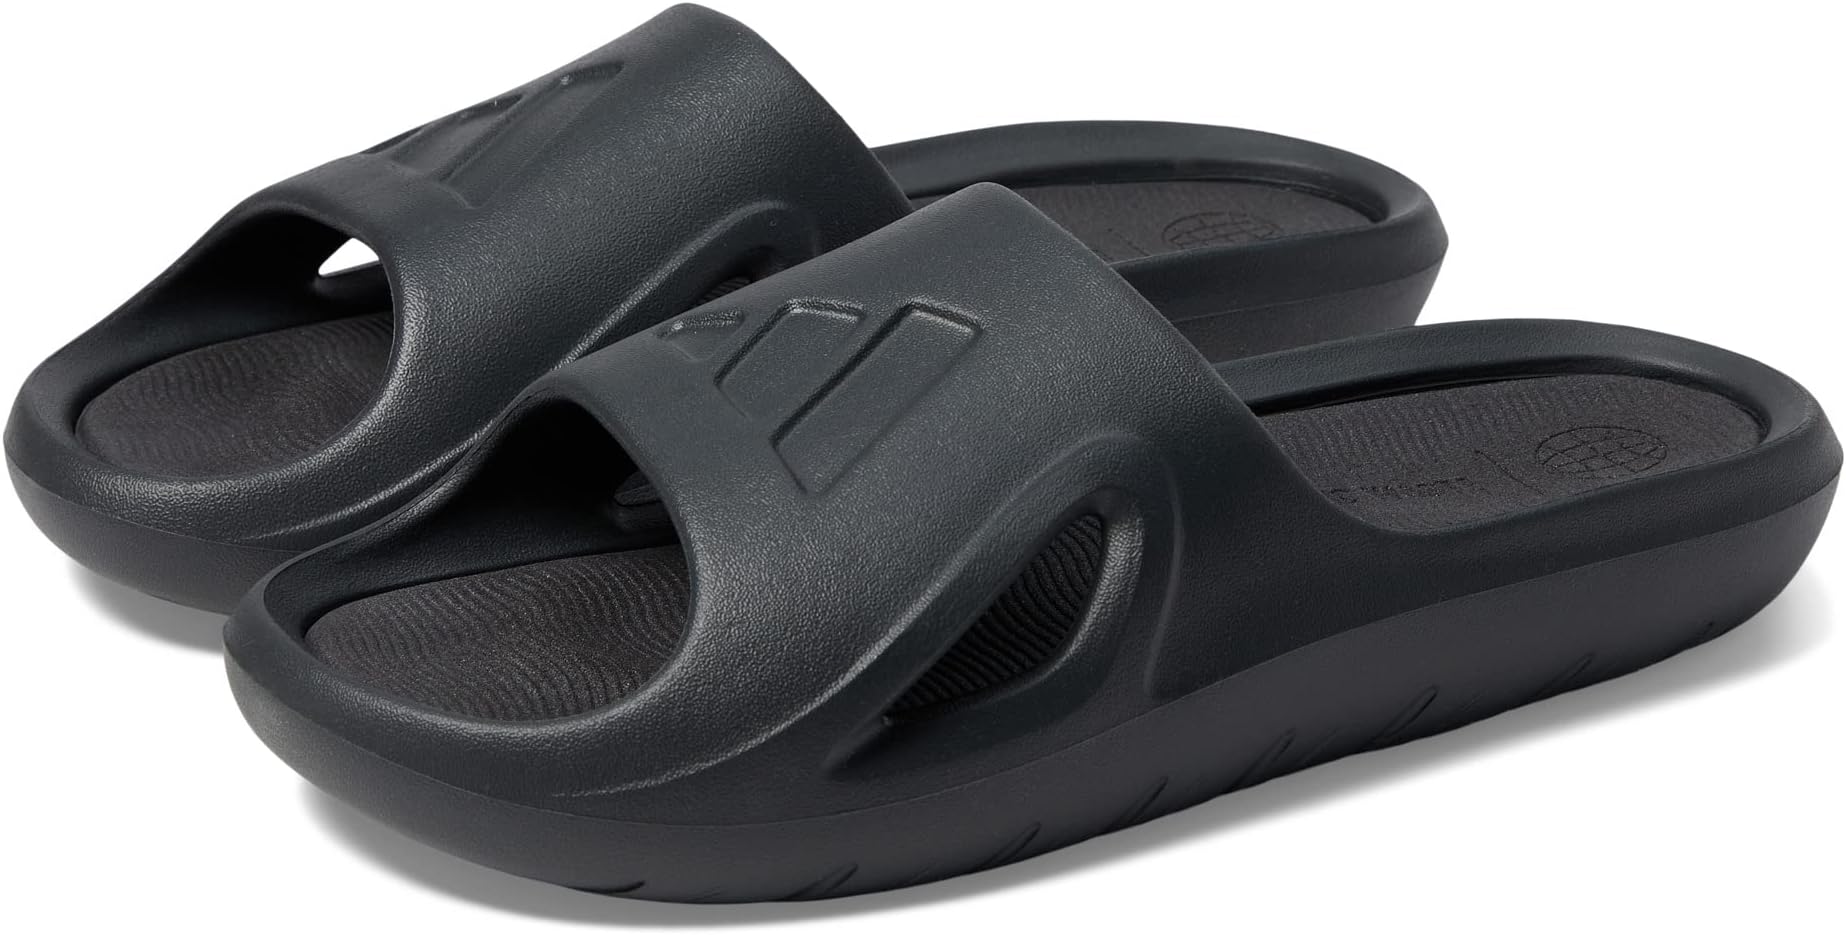 Шлепанцы Adicane Slides adidas, цвет Carbon/Carbon/Black